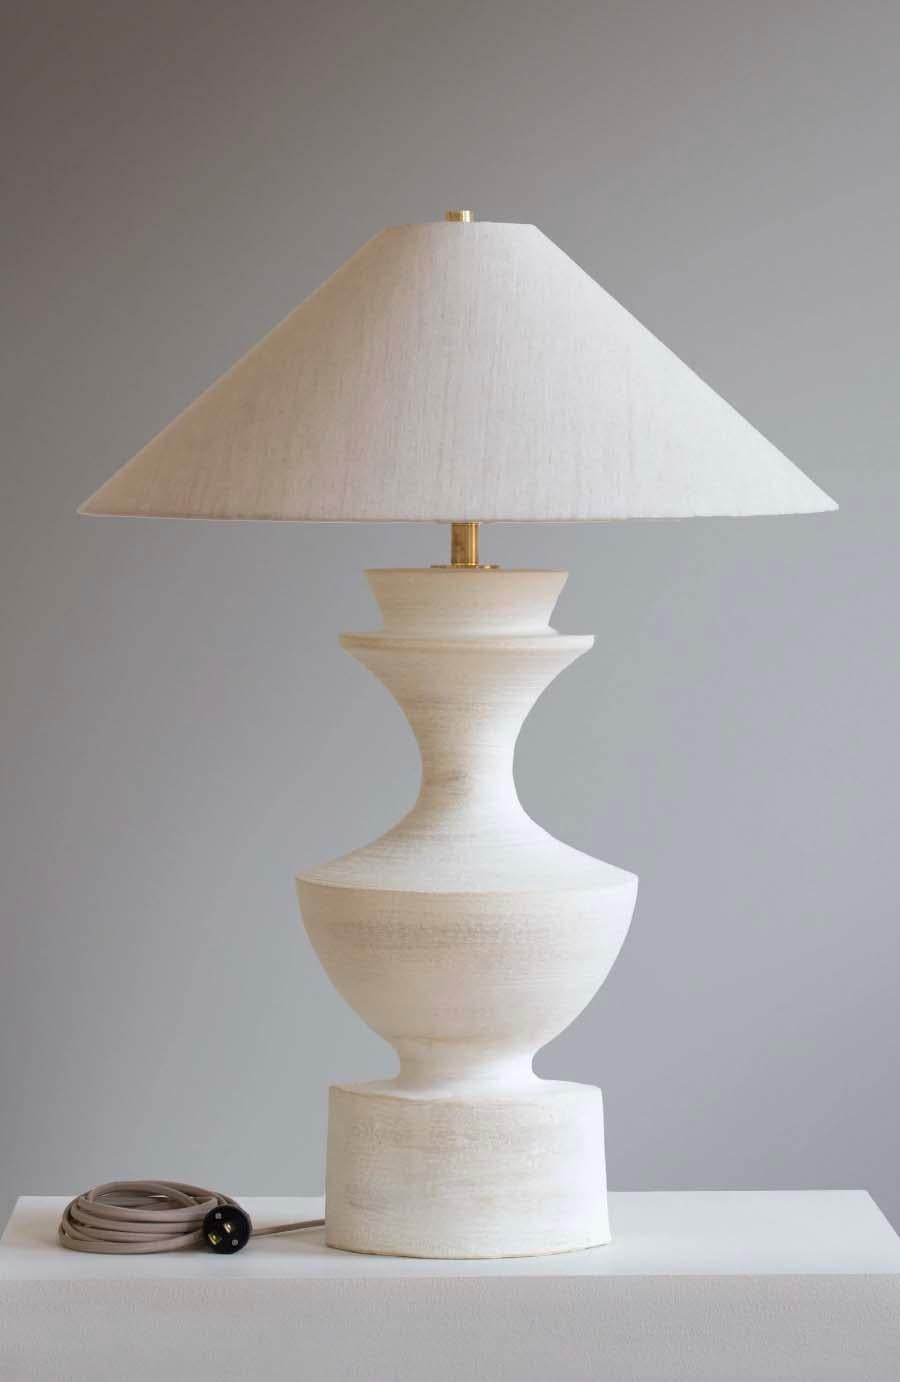 La lámpara Sophia es cerámica de estudio hecha a mano por el artista ceramista Danny Kaplan. Pantalla incluida. Ten en cuenta que las dimensiones exactas pueden variar.

Nacido en Nueva York y criado en Aix-en-Provence (Francia), la pasión de Danny